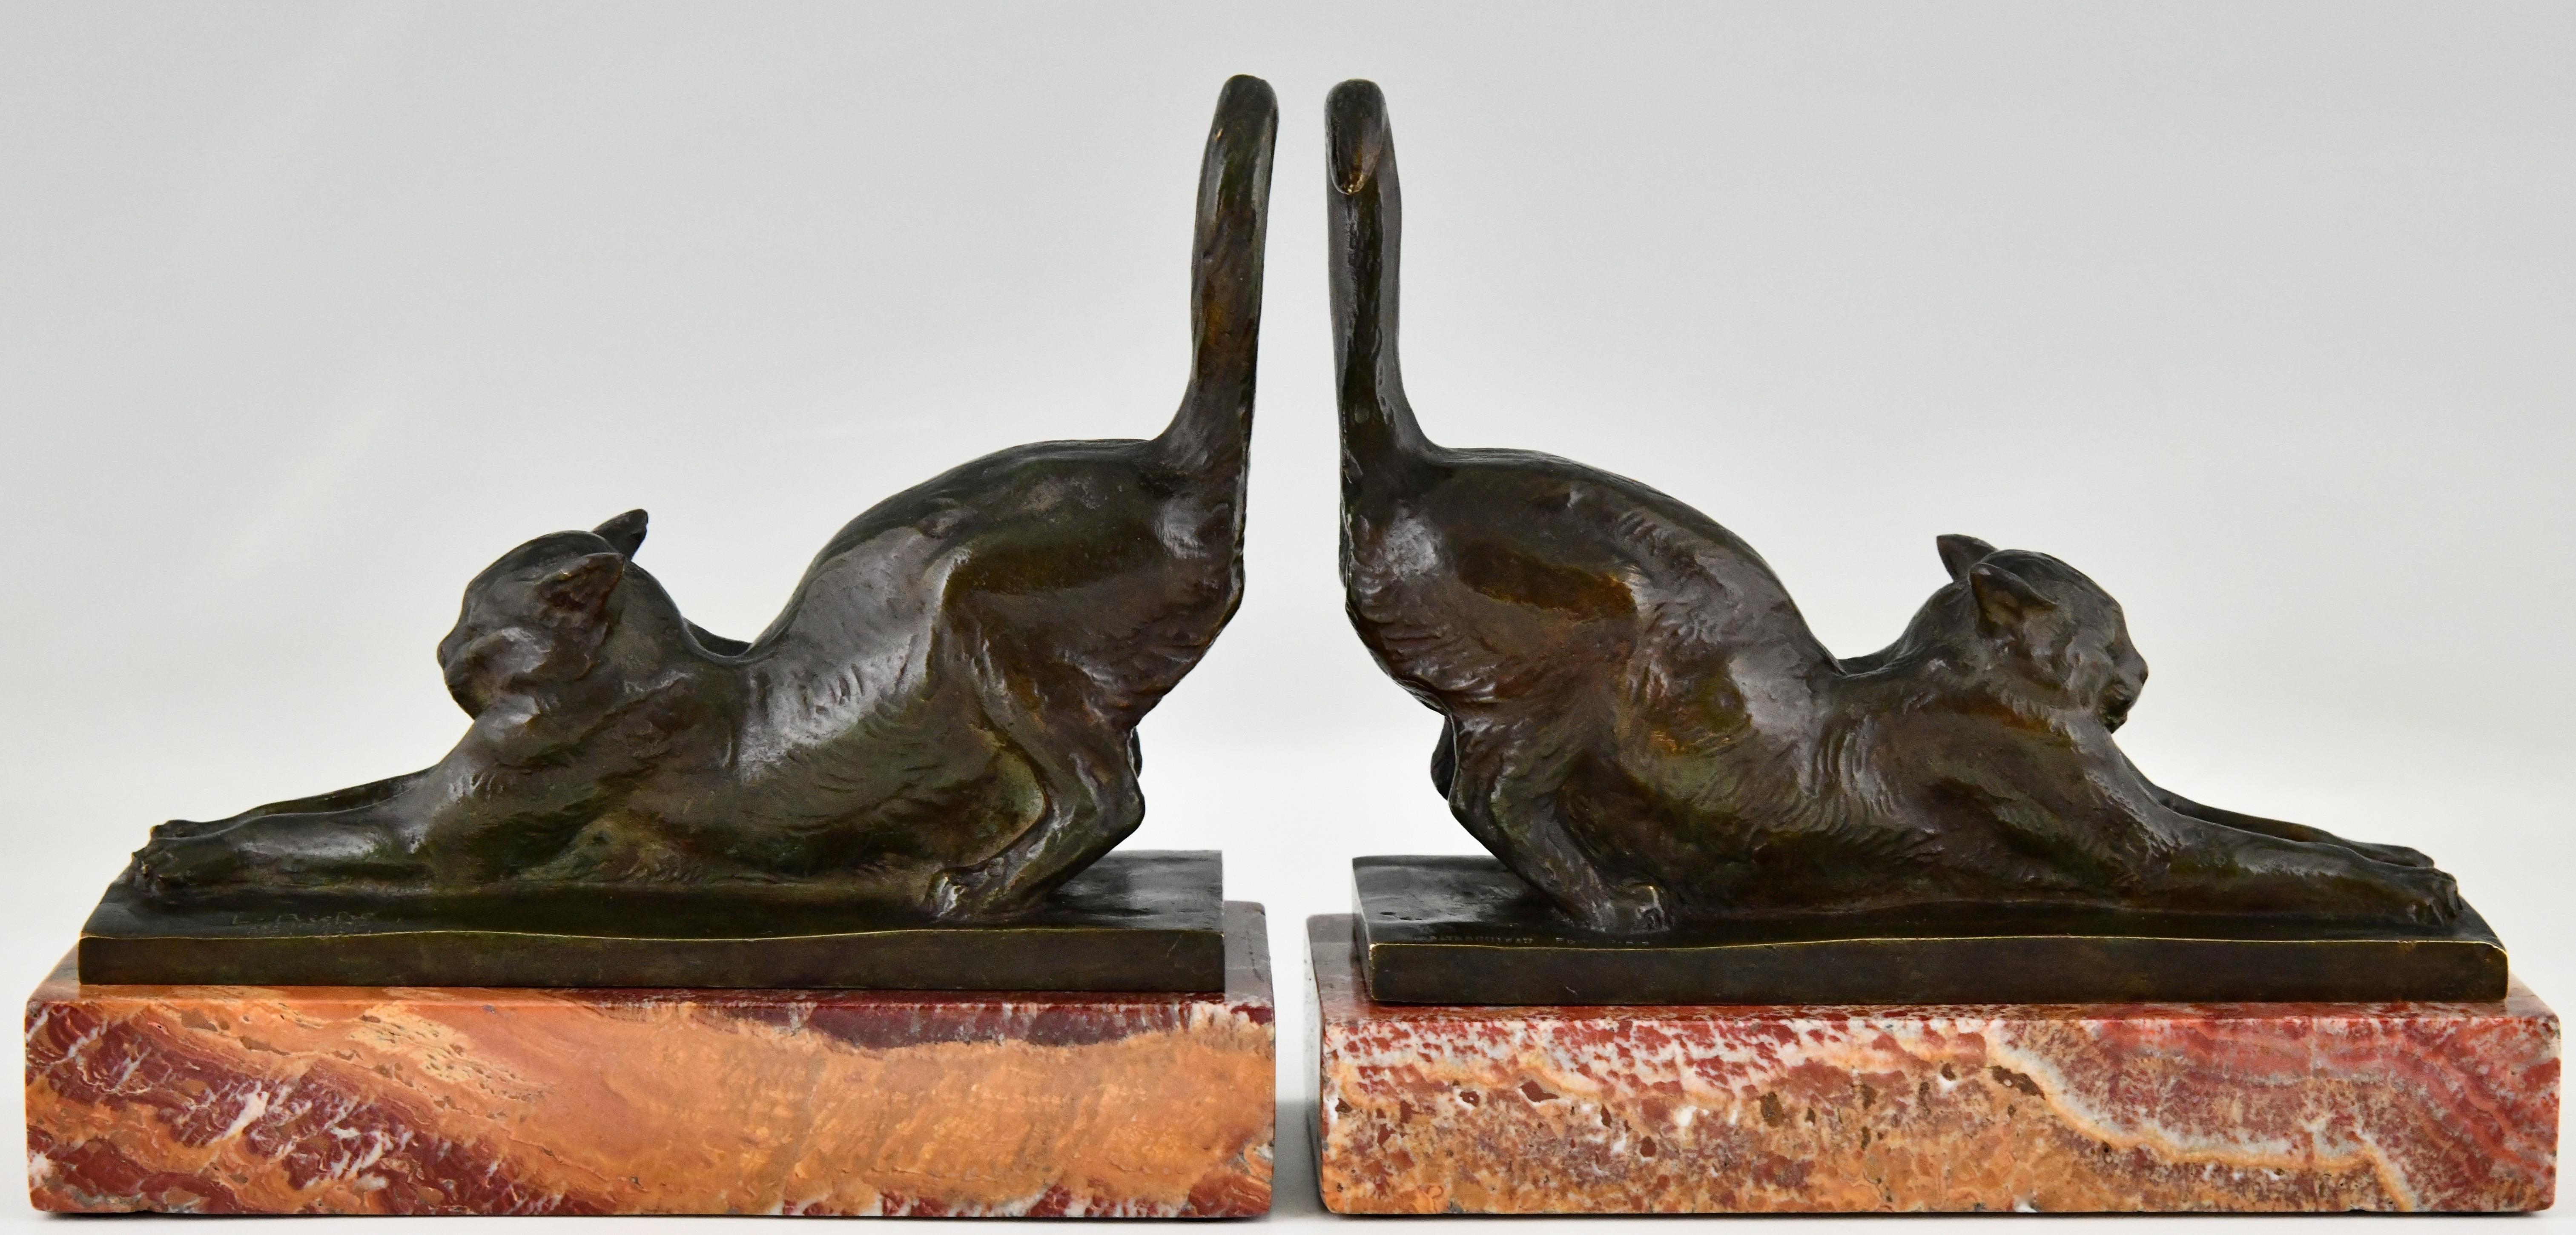 Sehr schönes Paar Art Deco Bronze Buchstützen mit streckenden Katzen auf einem schwarzen Marmorsockel. Das Paar ist von Louis Riche (1877-1949) signiert, einem berühmten französischen Tiermaler, der auf Katzenskulpturen spezialisiert war.
Signiert,